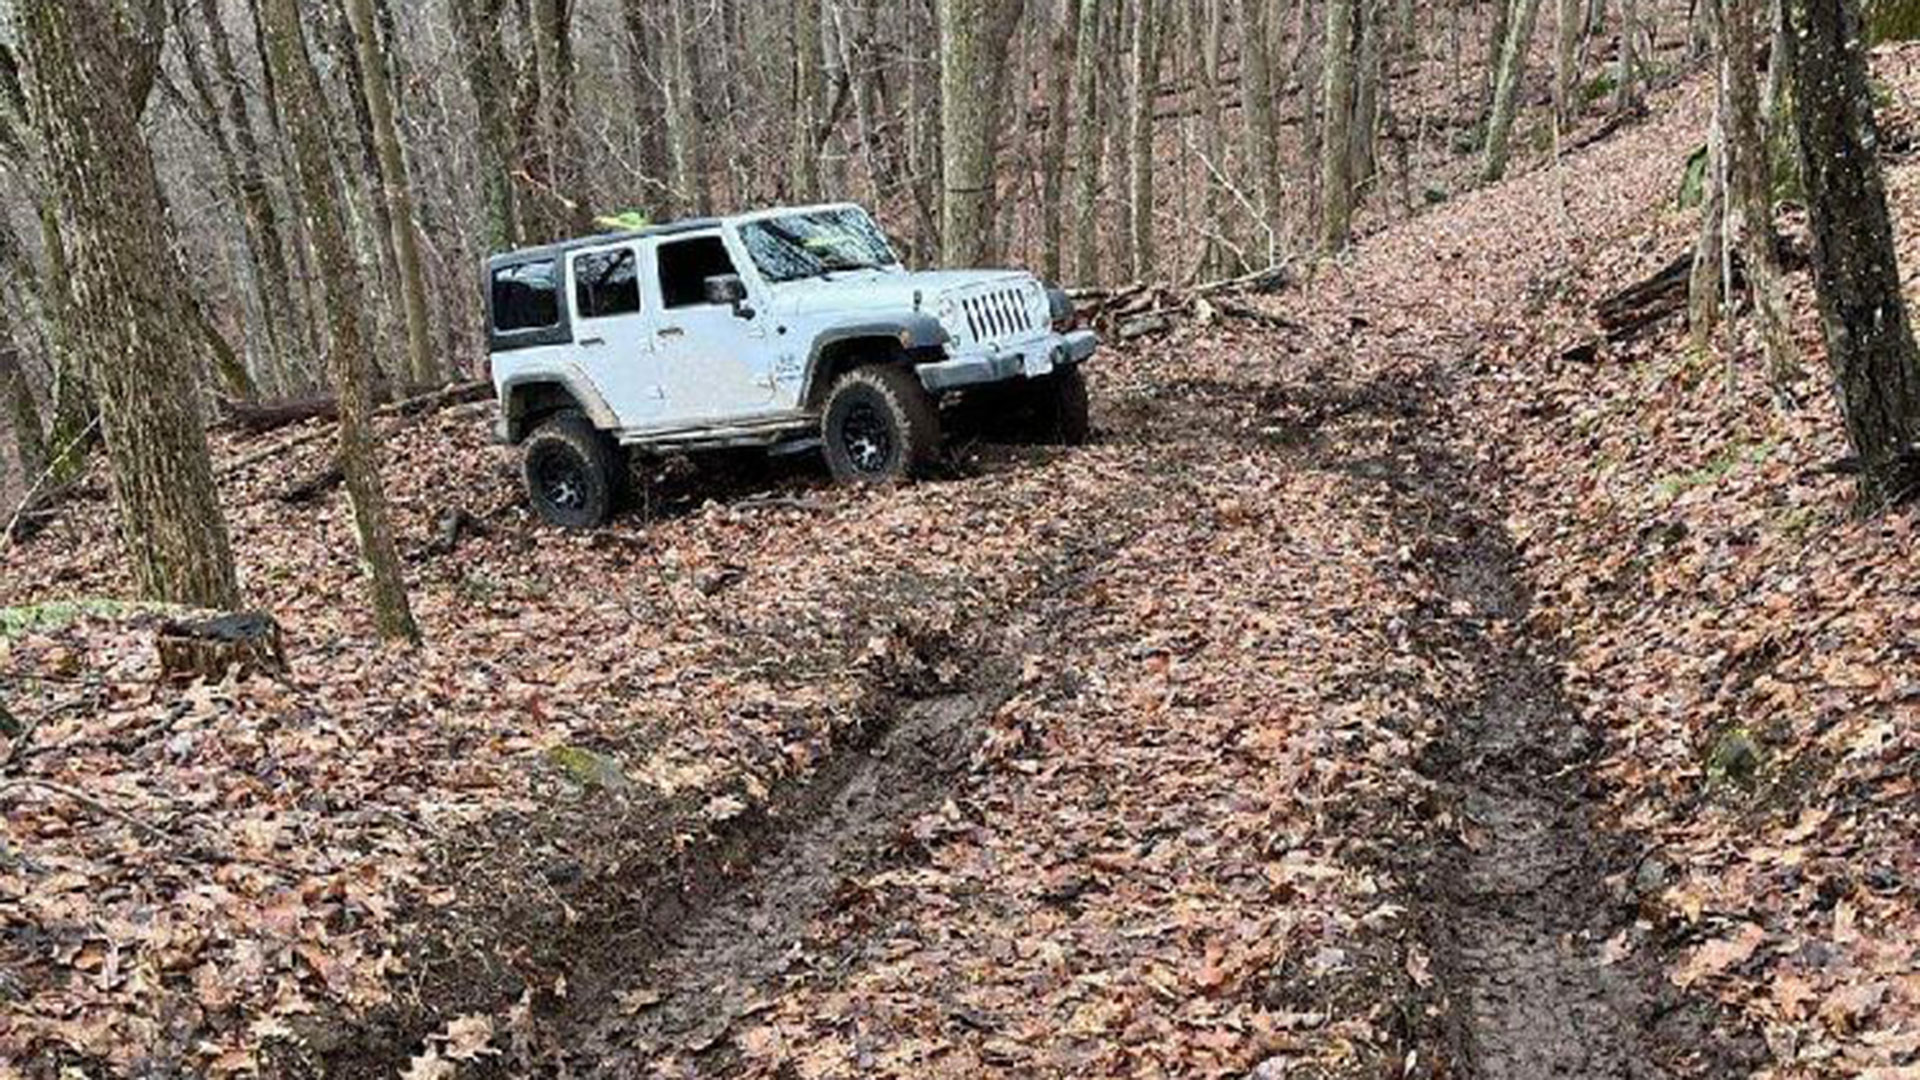 Wrangler stranded in soft mud in Virginia